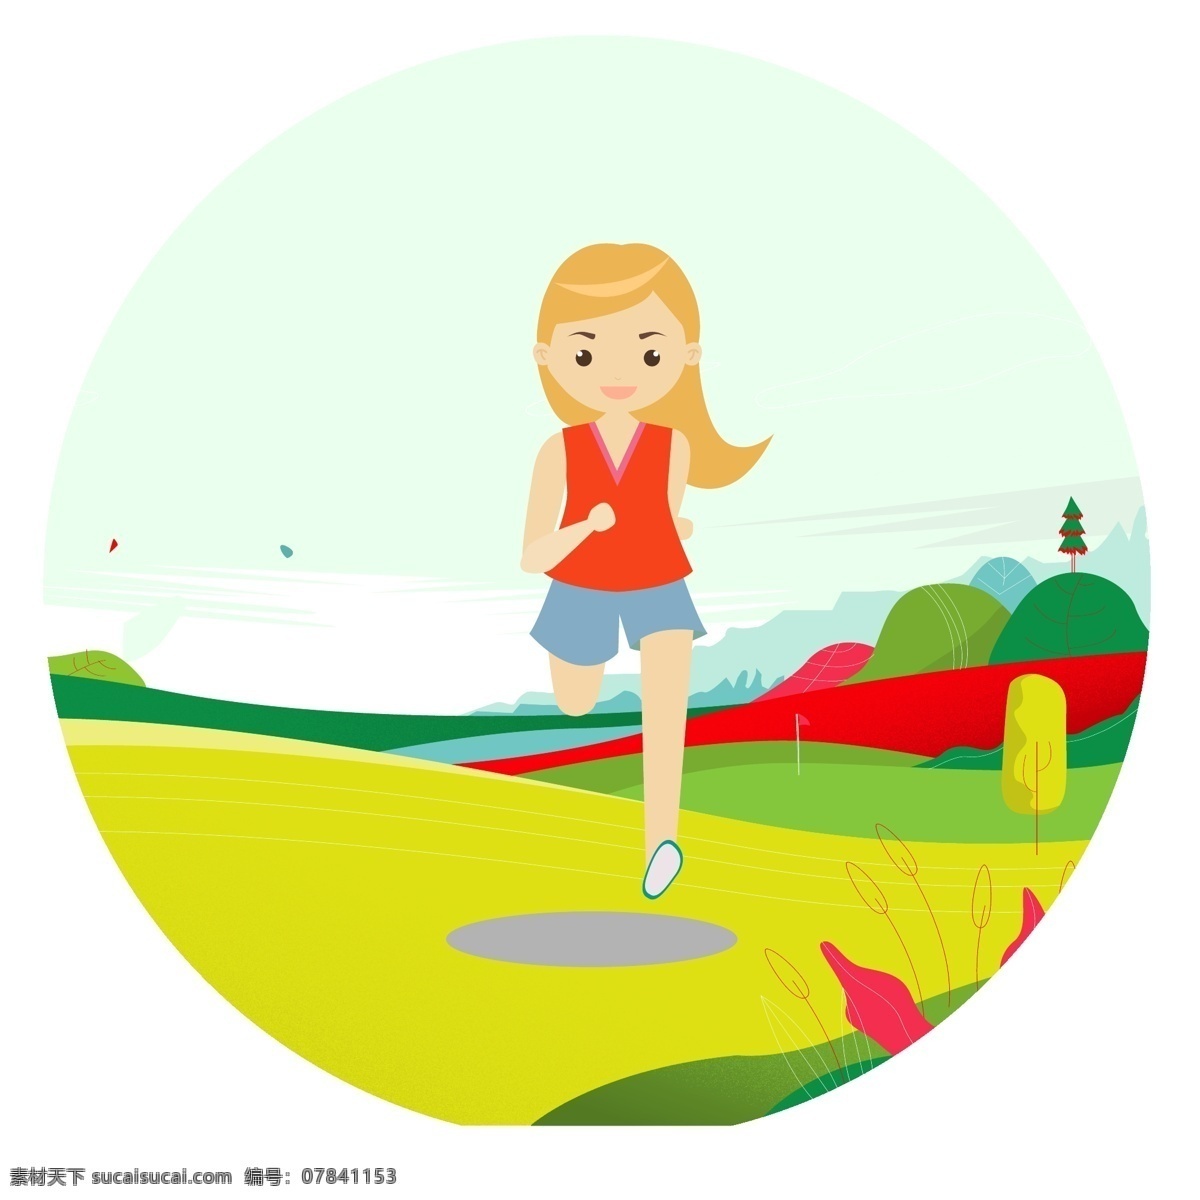 春季 运动 健康 跑步 女孩 手绘 卡通 春季运动健康 放风筝 春季运动 运动健身 跑步女孩 卡通设计 卡通男孩 野外 春季郊游